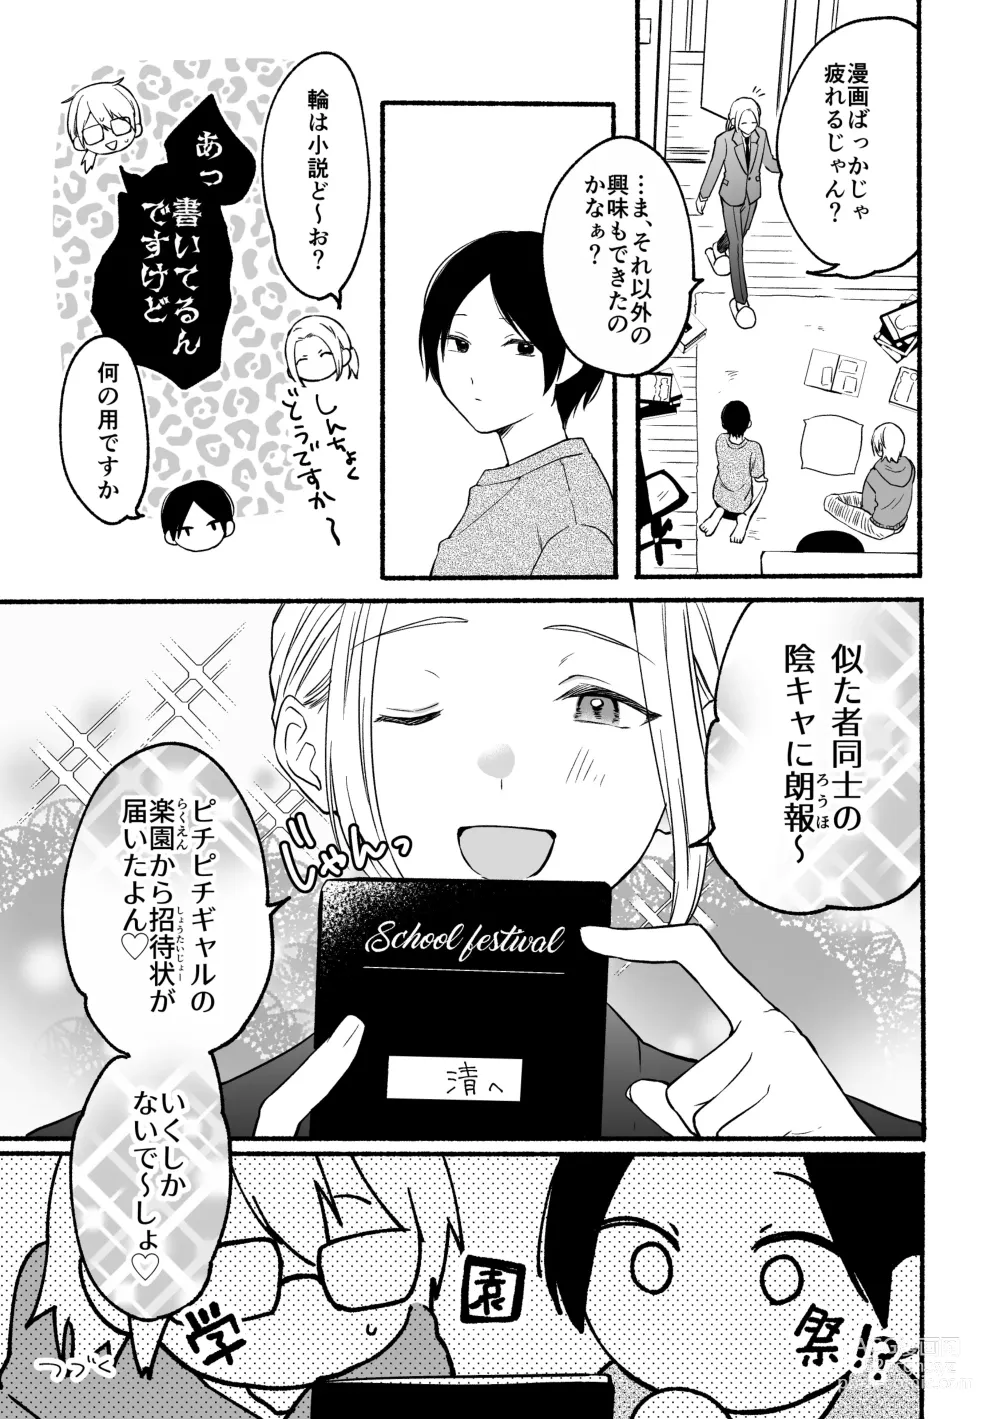 Page 27 of doujinshi Seijinkou Mangakka, Hamedori Haishin Ganbarimasu.